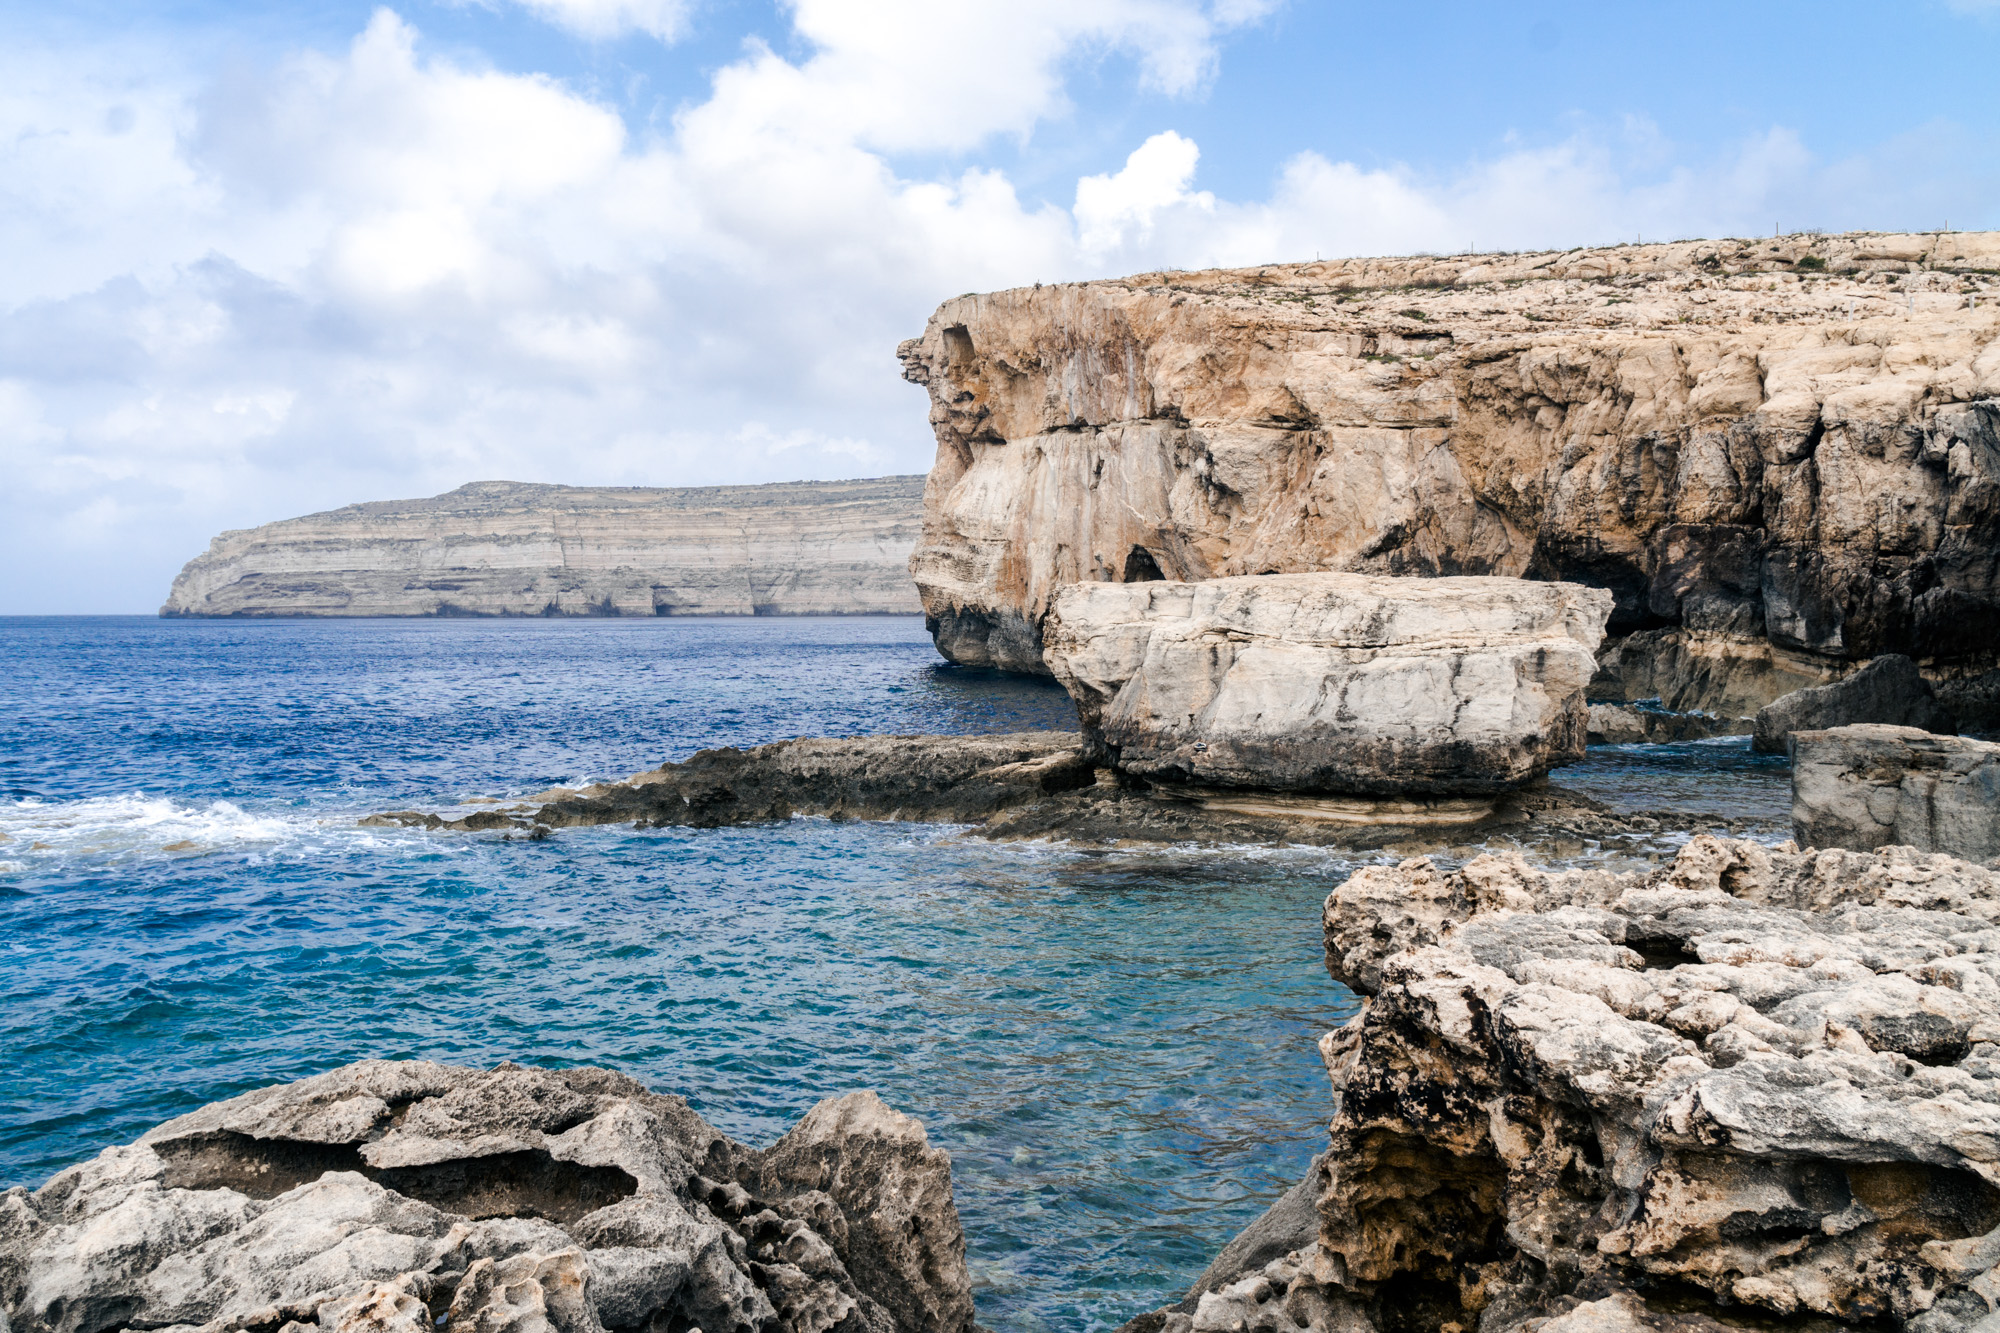 Malta – day 5: Gozo